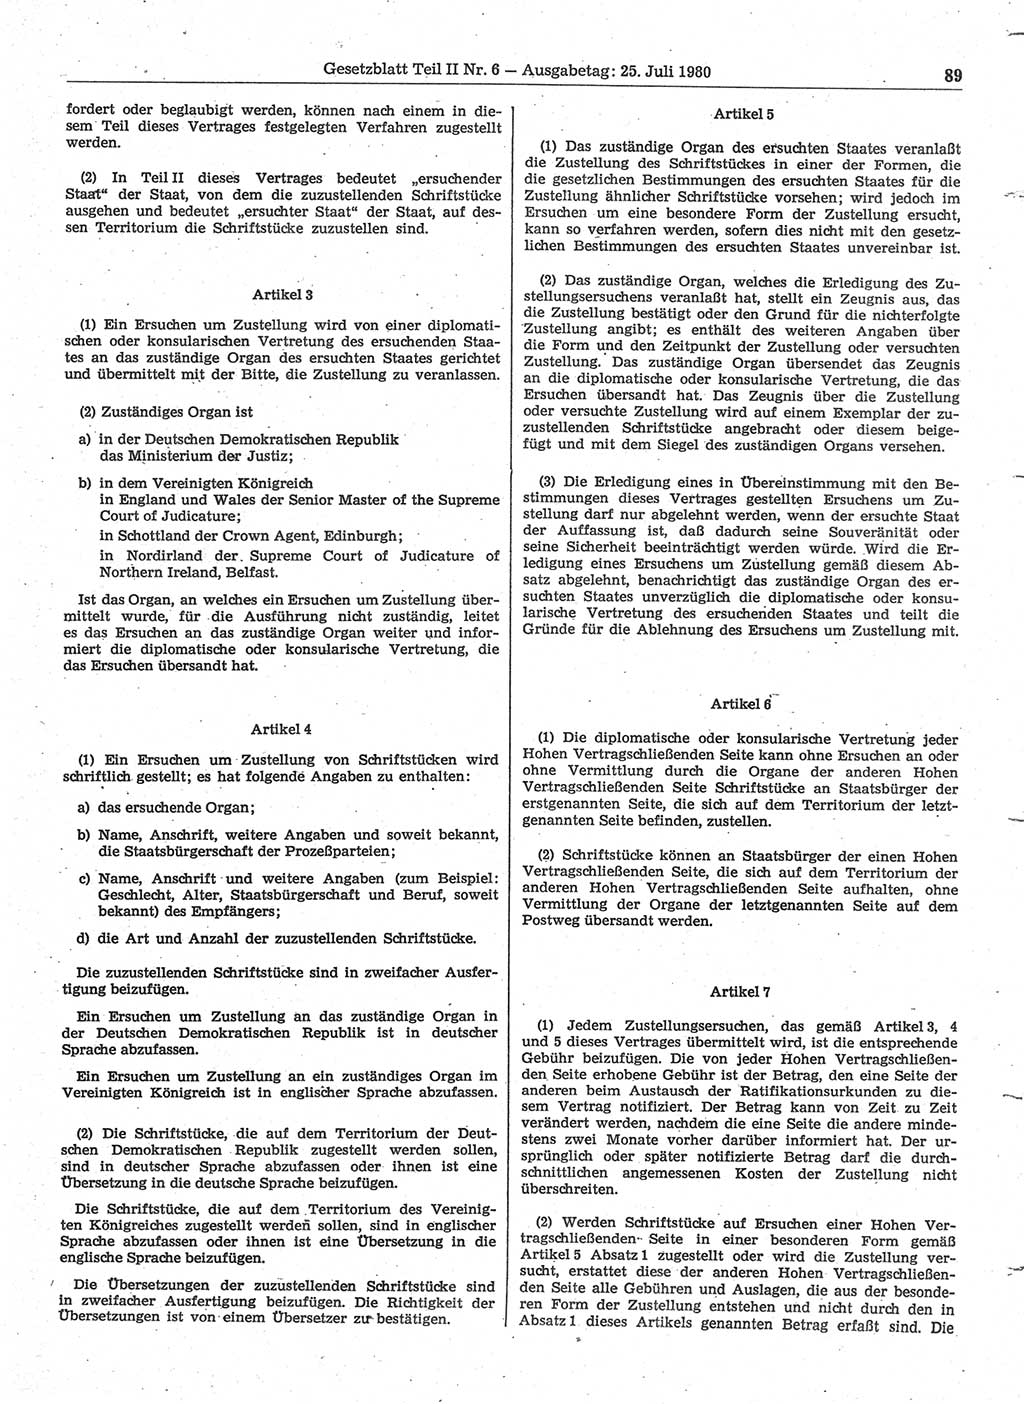 Gesetzblatt (GBl.) der Deutschen Demokratischen Republik (DDR) Teil ⅠⅠ 1980, Seite 89 (GBl. DDR ⅠⅠ 1980, S. 89)